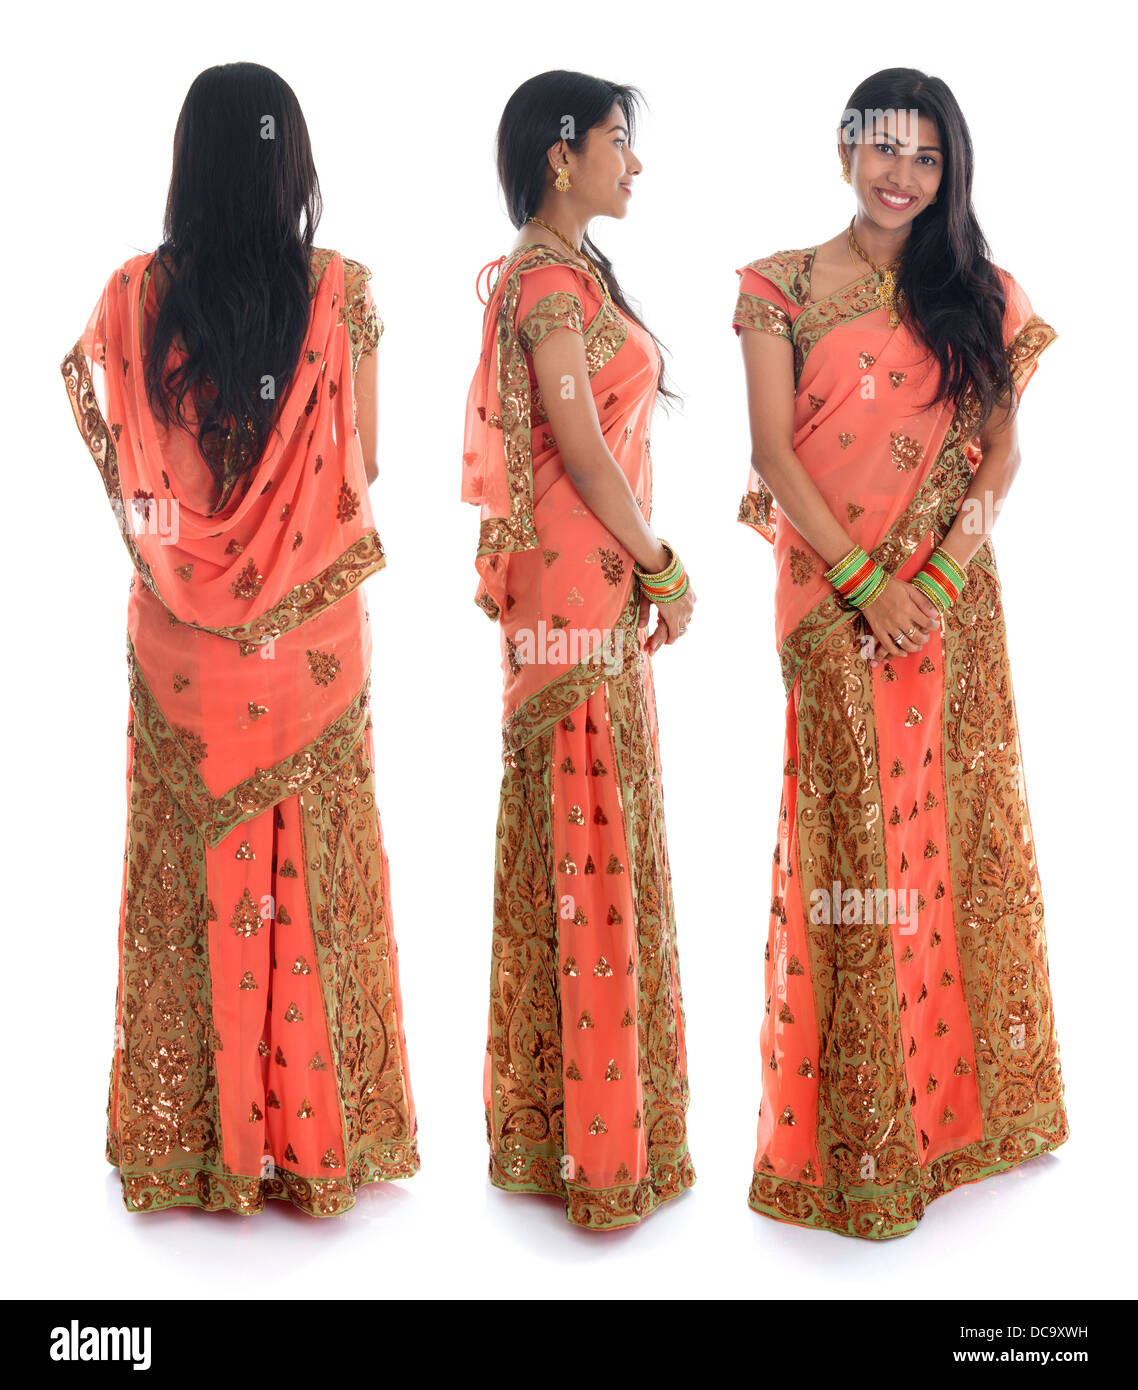 Voller Körper traditionelle indische Frau im Sari Kostüm unterschiedliche  Winkel Front-, Seiten- und Rückansicht stehend auf weißem Hintergrund  Stockfotografie - Alamy